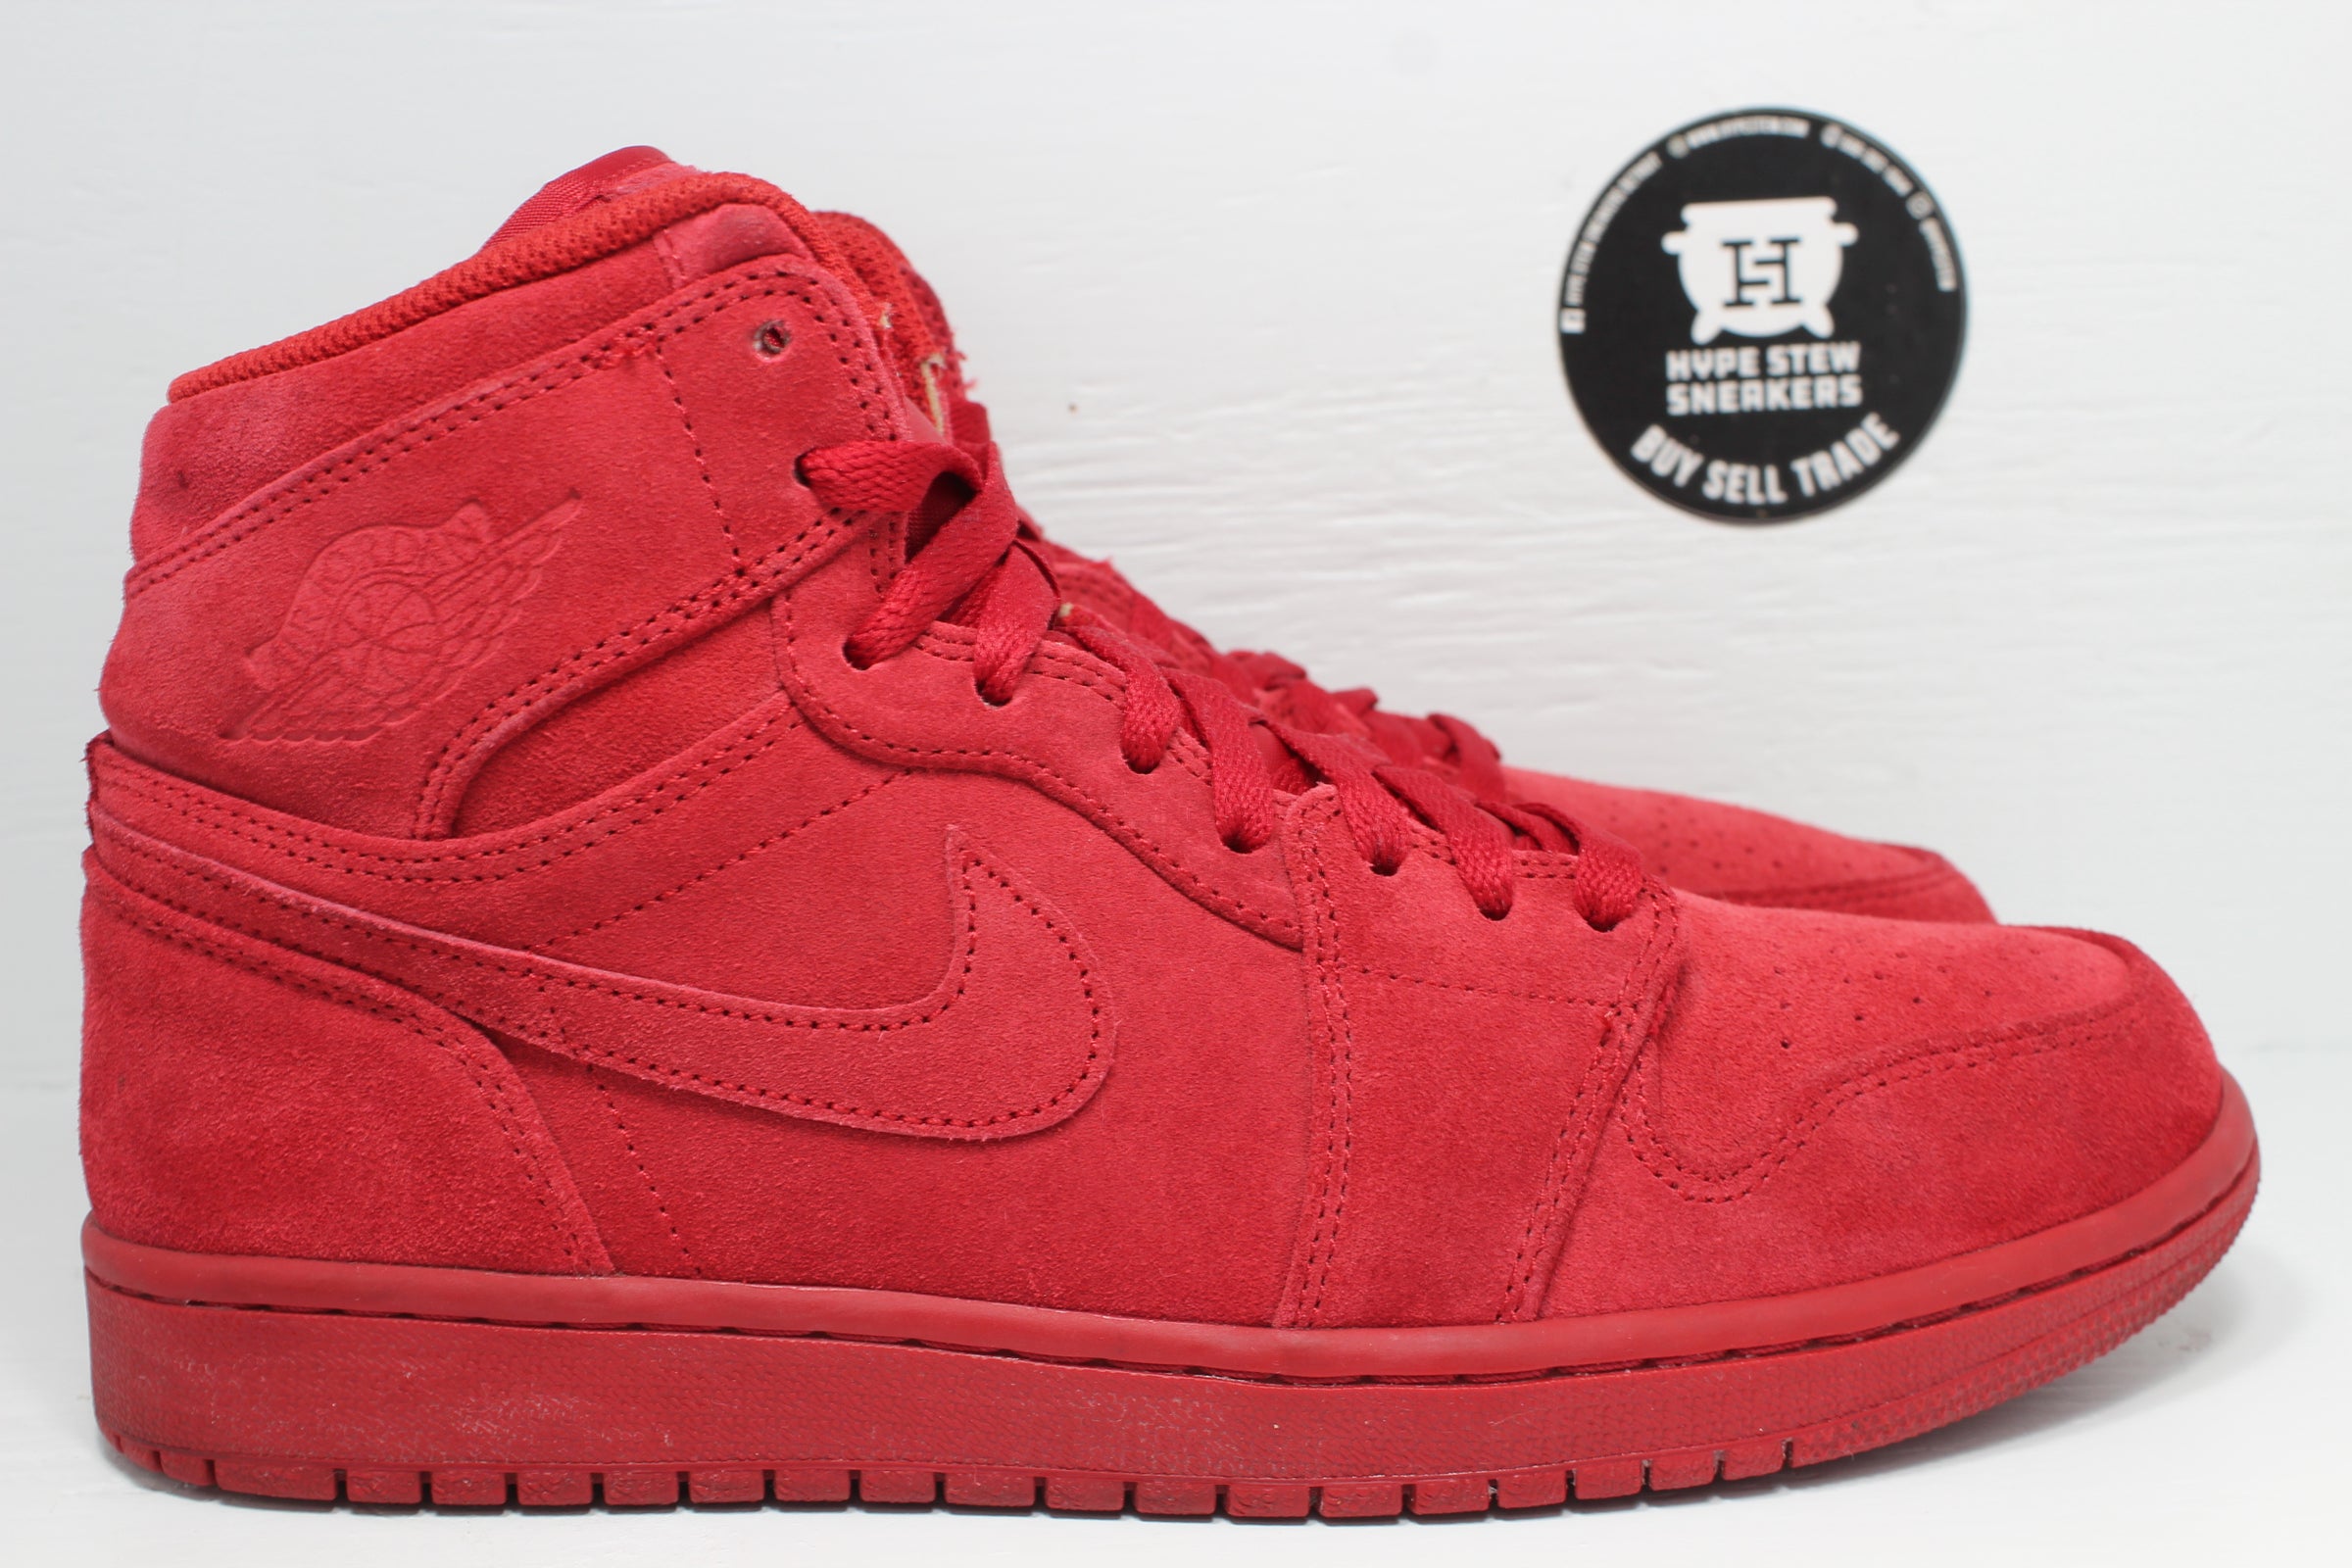 Nike Air Jordan 1 High Red Suede | Hype Stew Sneakers Detroit